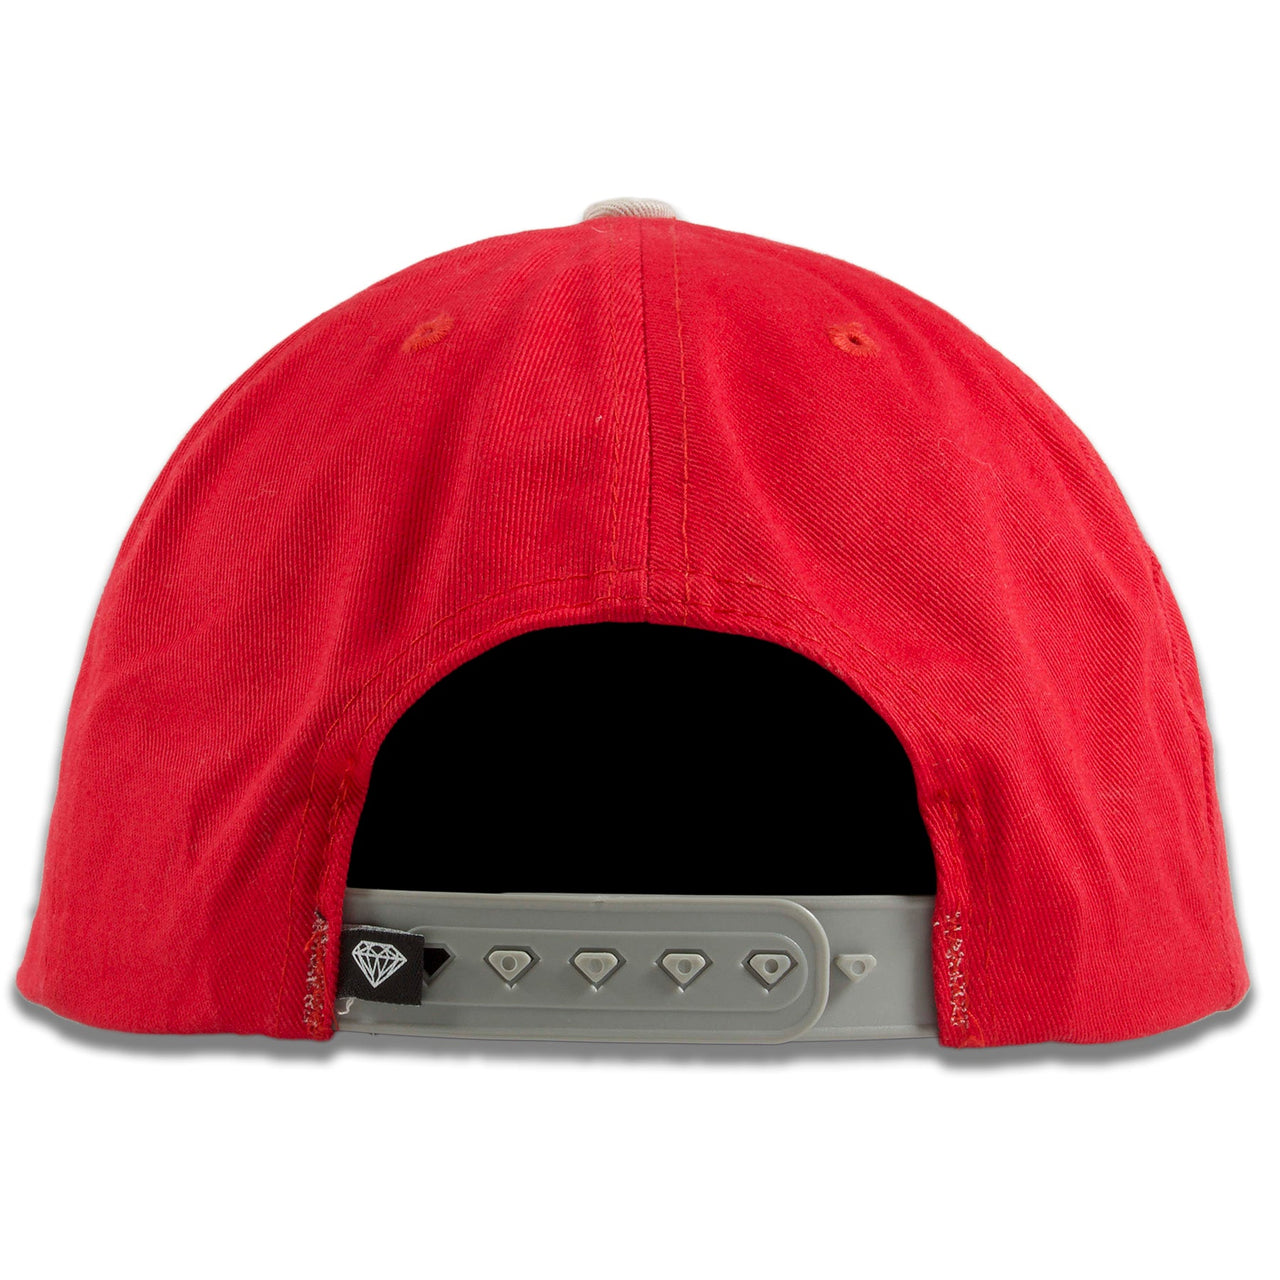 Diamond Supply Co OG Script Red on Gray Snapback Hat